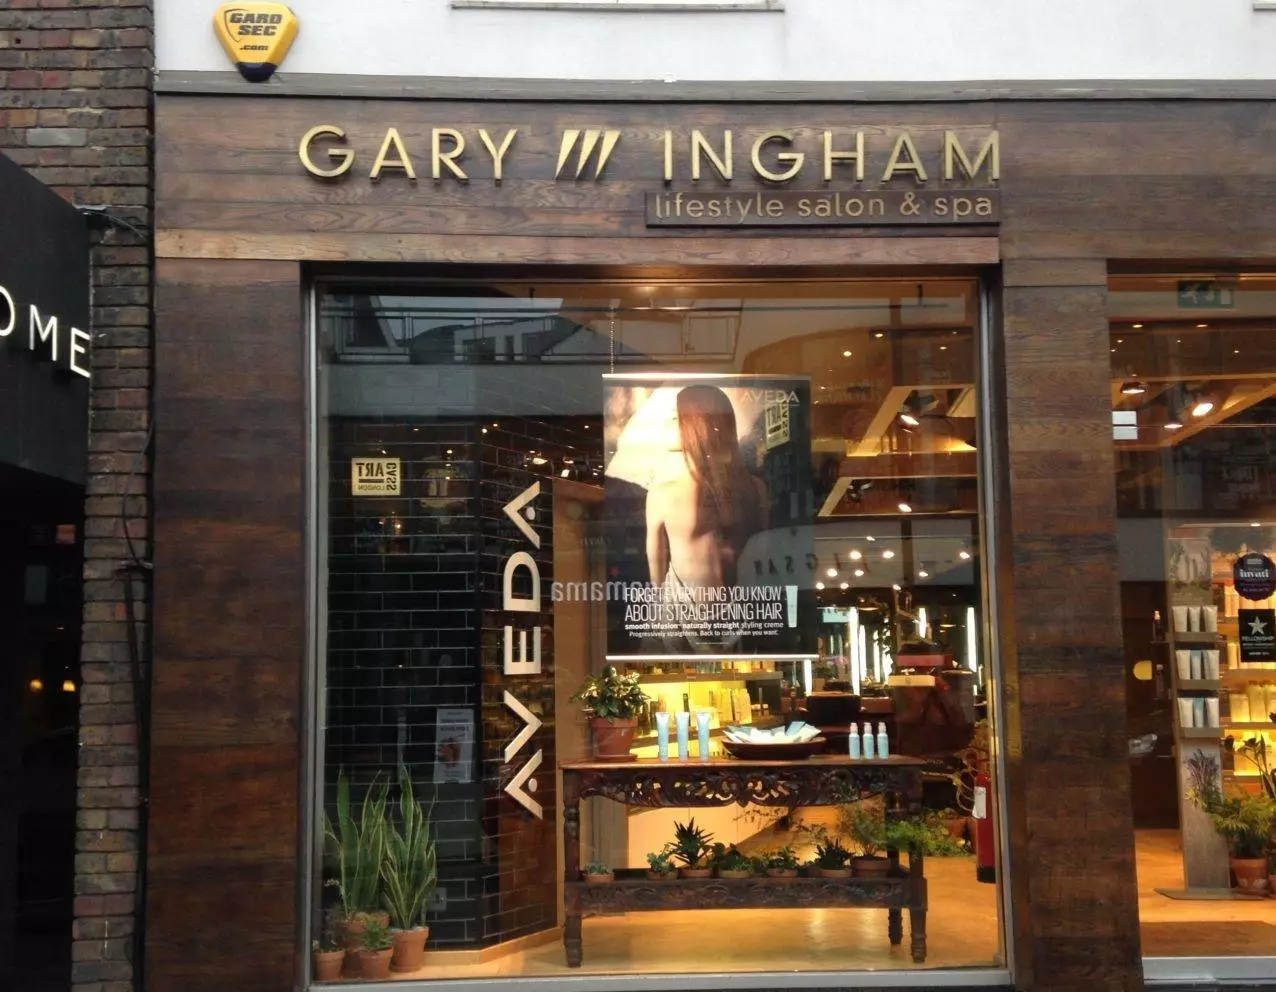 Gary Ingham retail shop sign